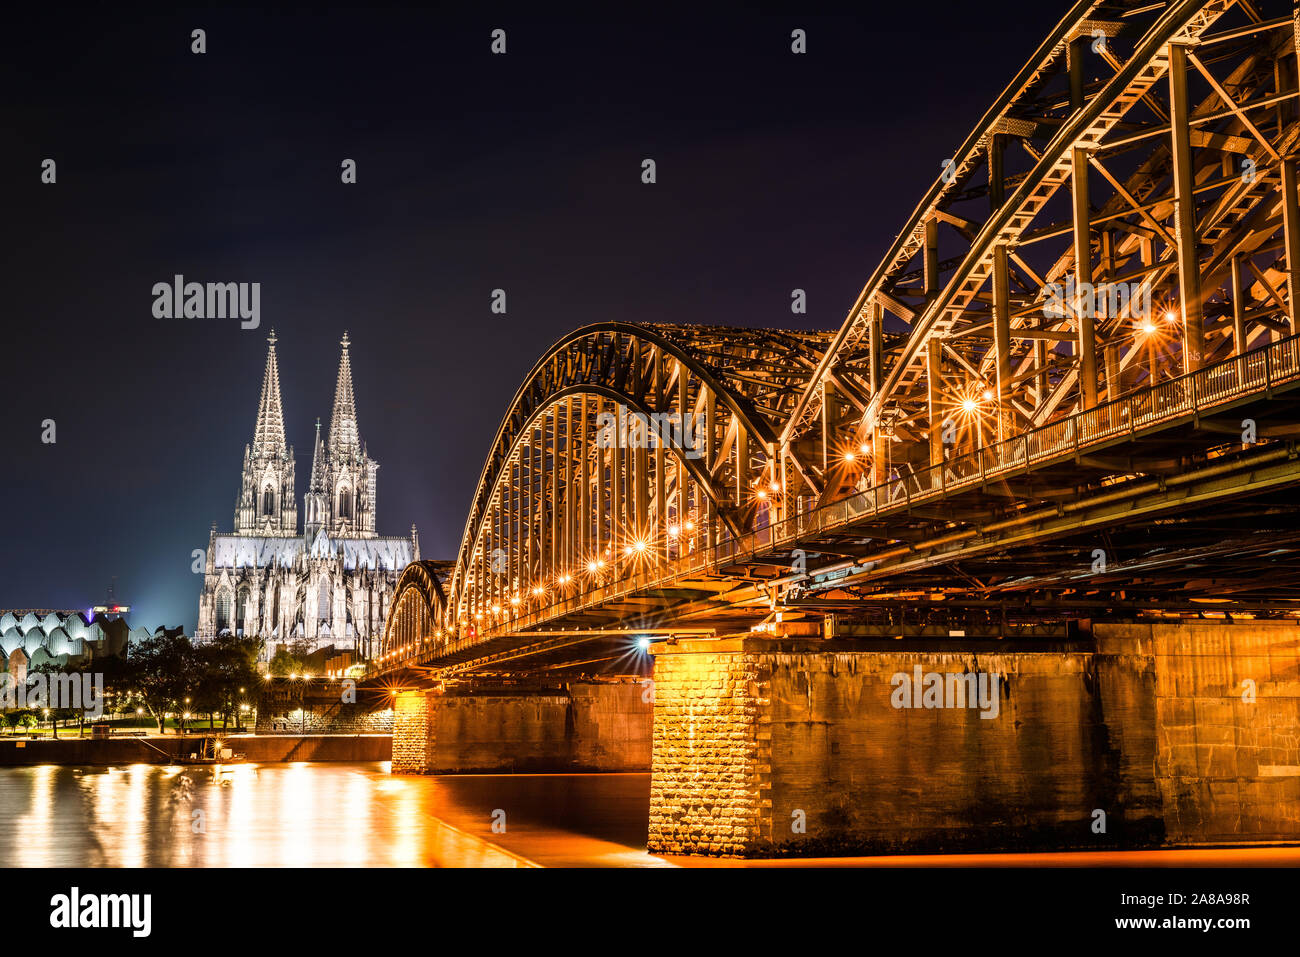 Colonia de noche con la catedral de Colonia, el puente Hohenzollern y el río Rin. Foto de stock